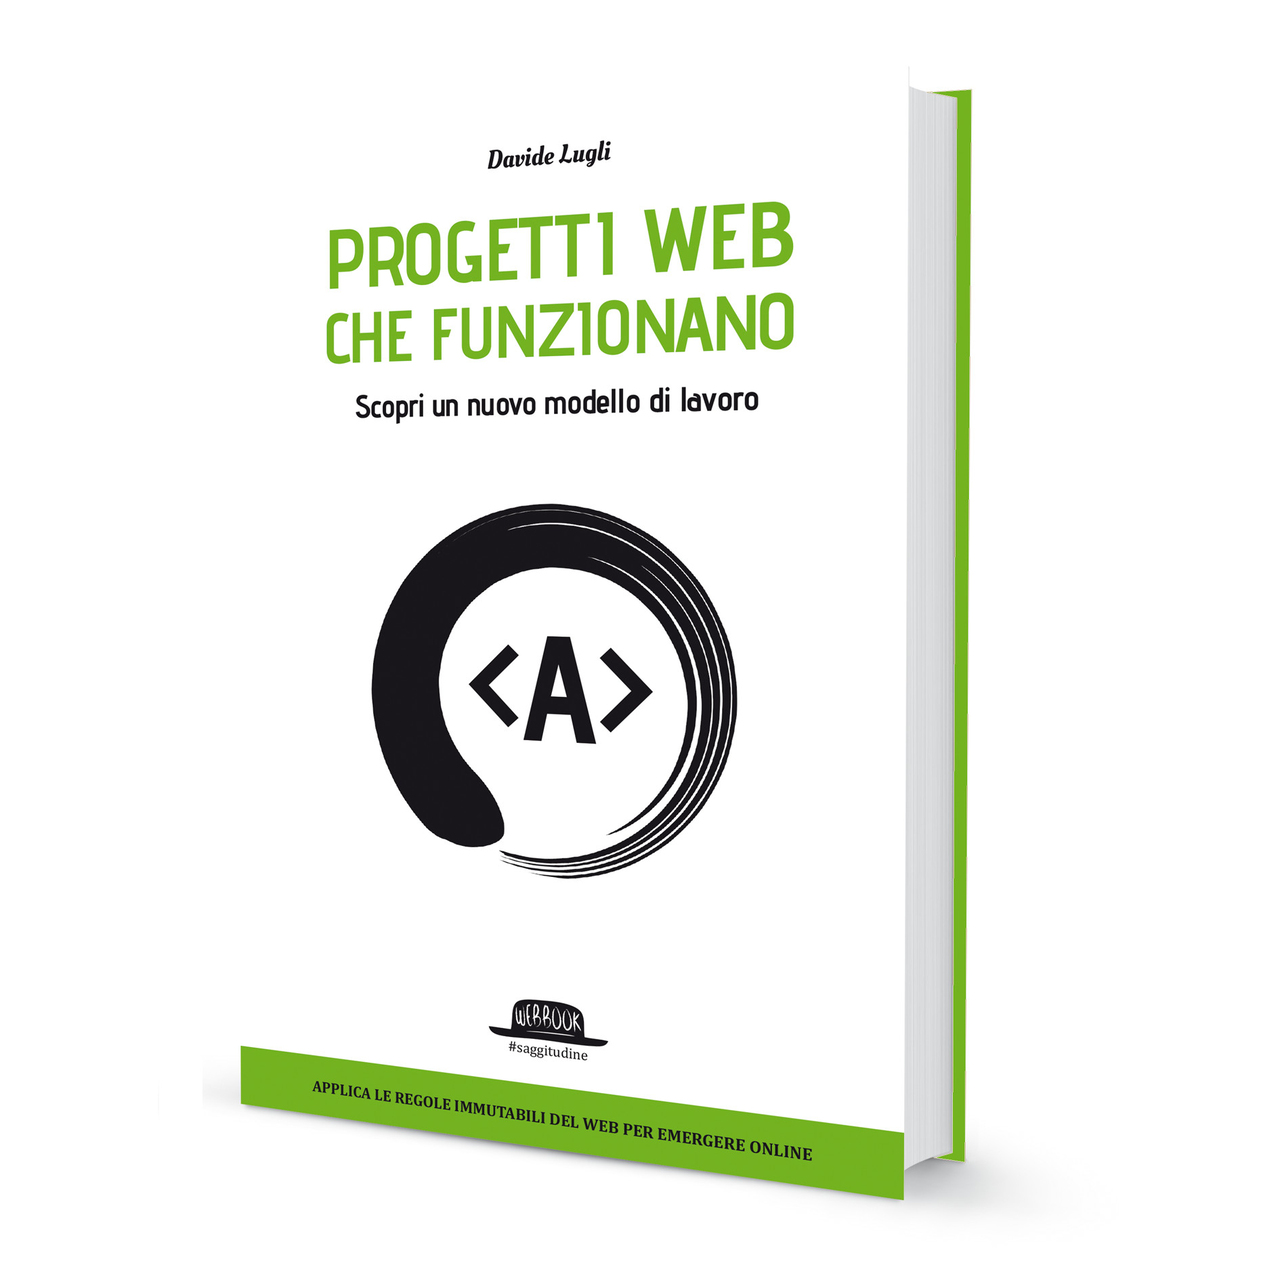 Davide Lugli: 2018. Davide Lugli bio je autor knjige "Web projekti koji rade", koju je objavio Dario Flaccovio Editore iz Palerma